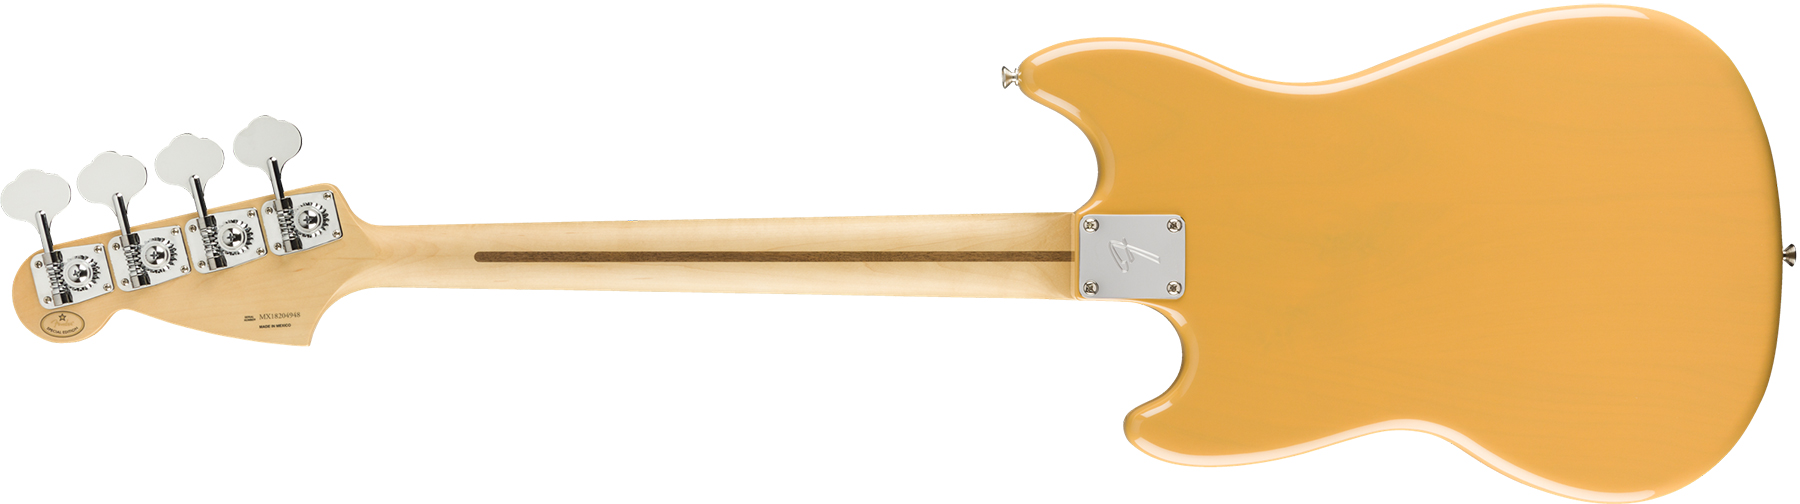 Fender Mustang Bass Pj Player Ltd Mex Mn - Butterscotch Blonde - Short scale elektrische bas - Variation 1